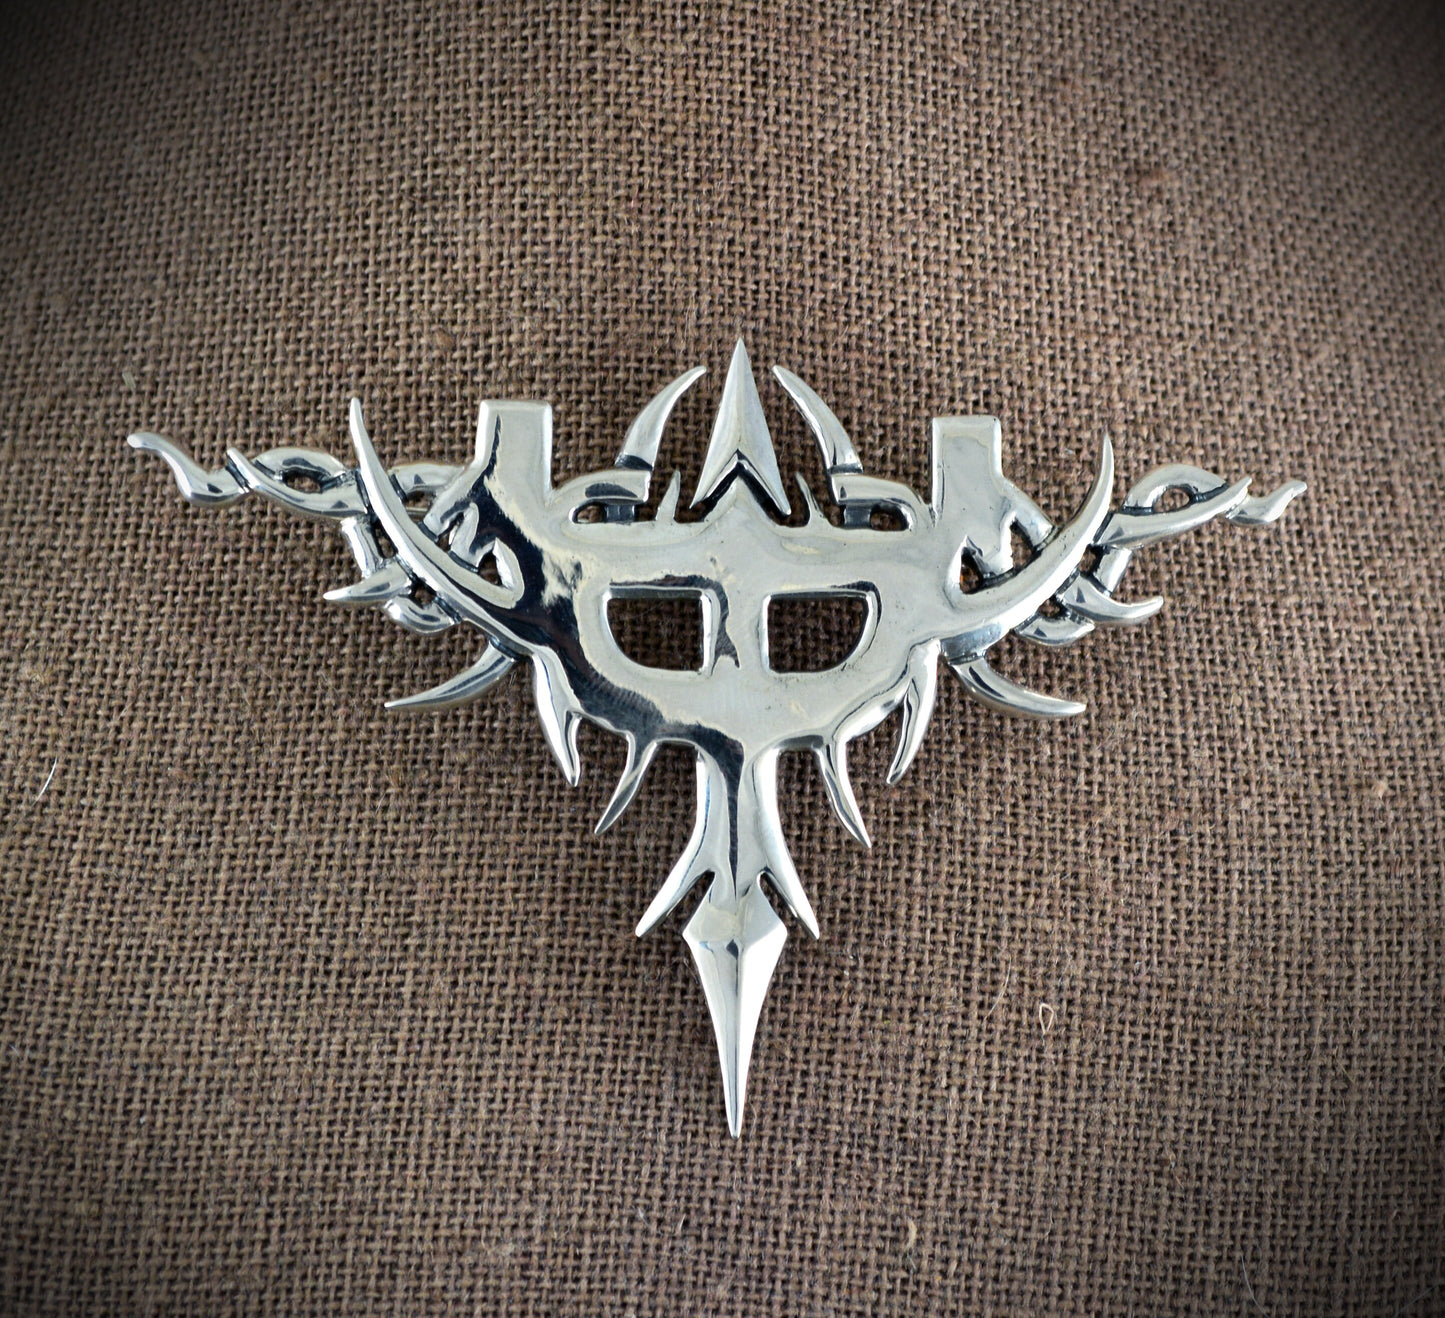 Silberne Brosche, inspiriert vom Emblem des Judas Priest